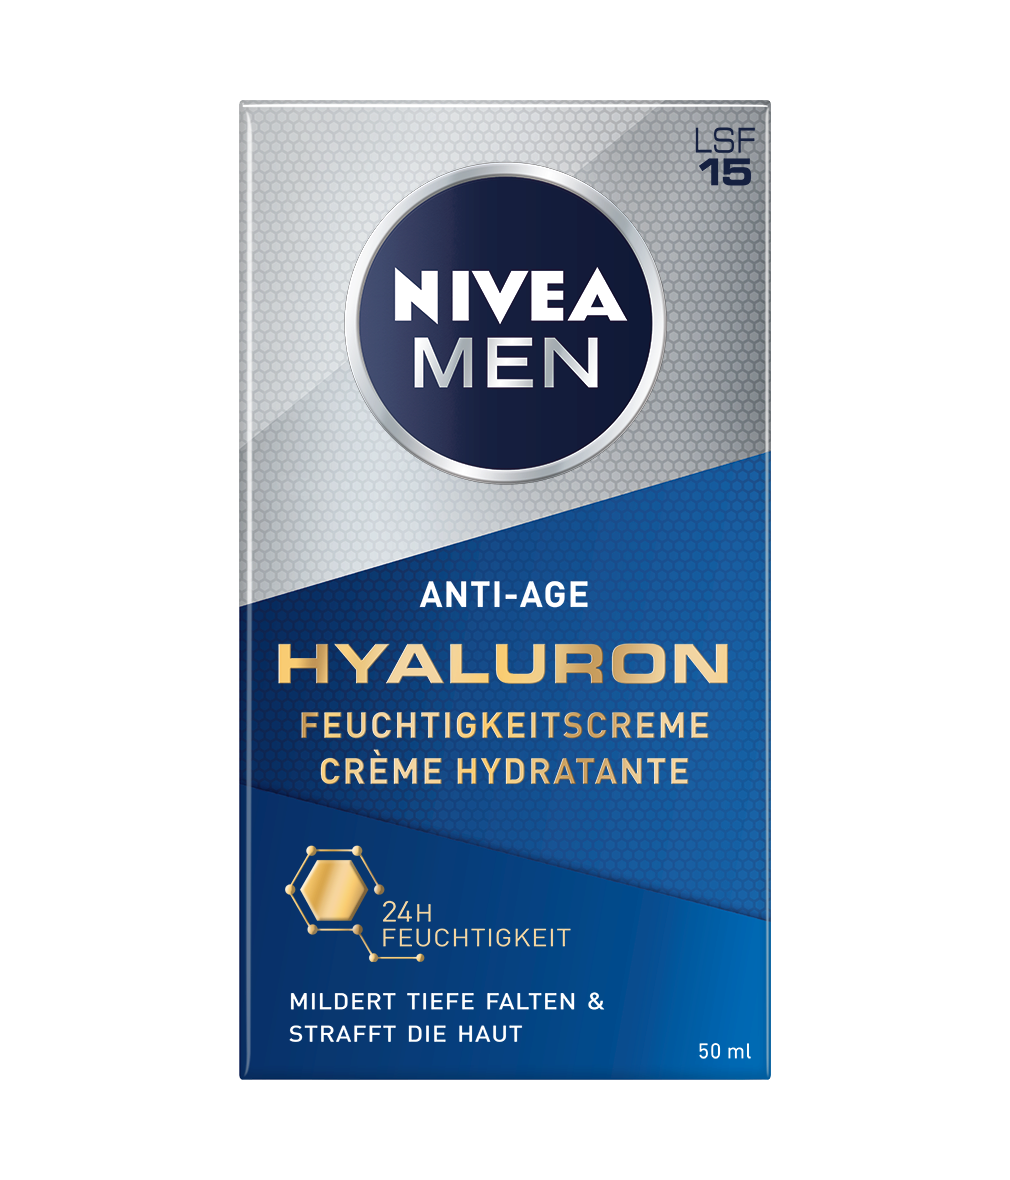 NIVEA MEN Anti-Age Hyaluron Feuchtigkeitscreme_50ml